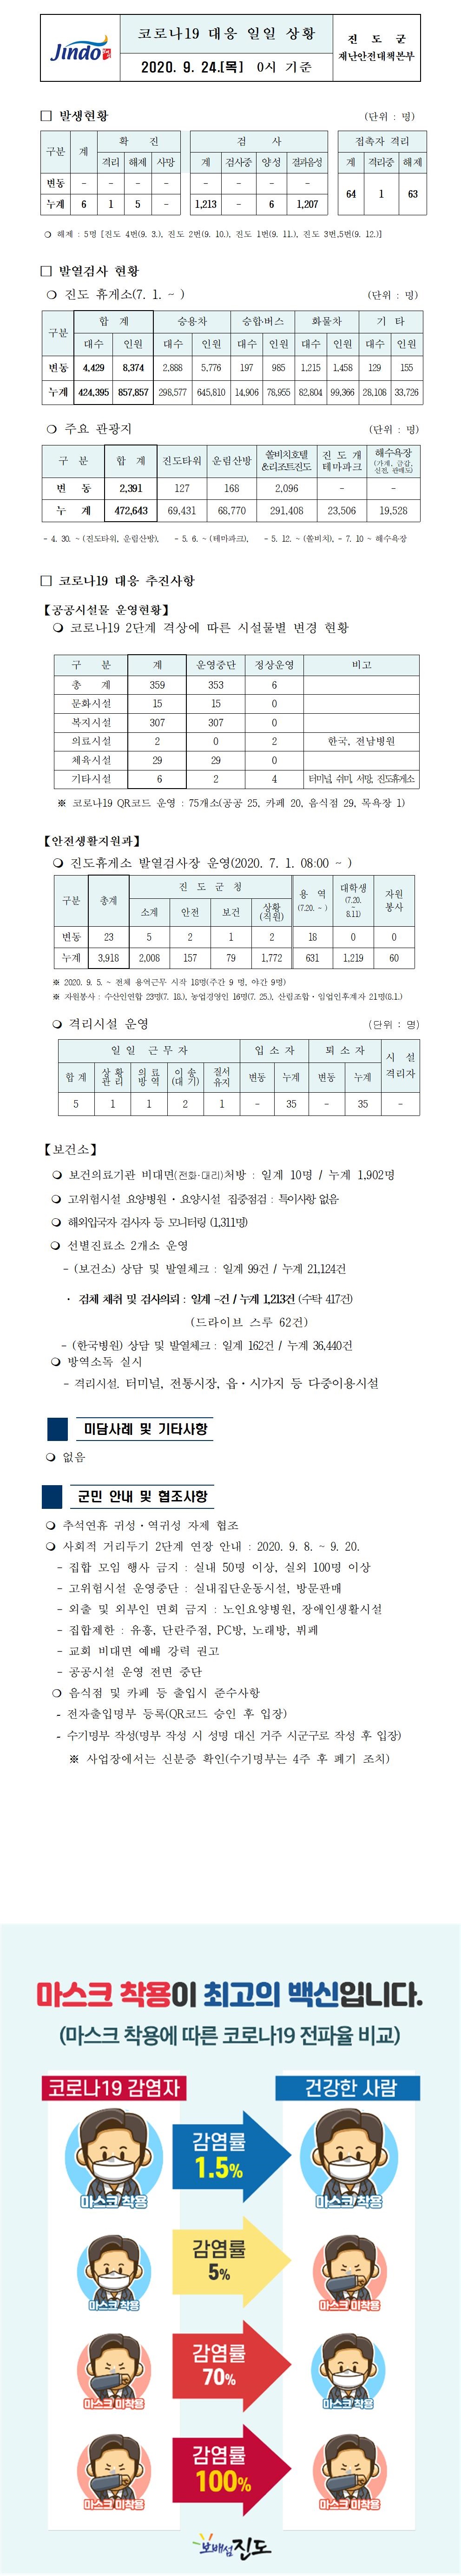 코로나19대응 일일 상황 보고(9월24일 0시 기준) 첨부#1